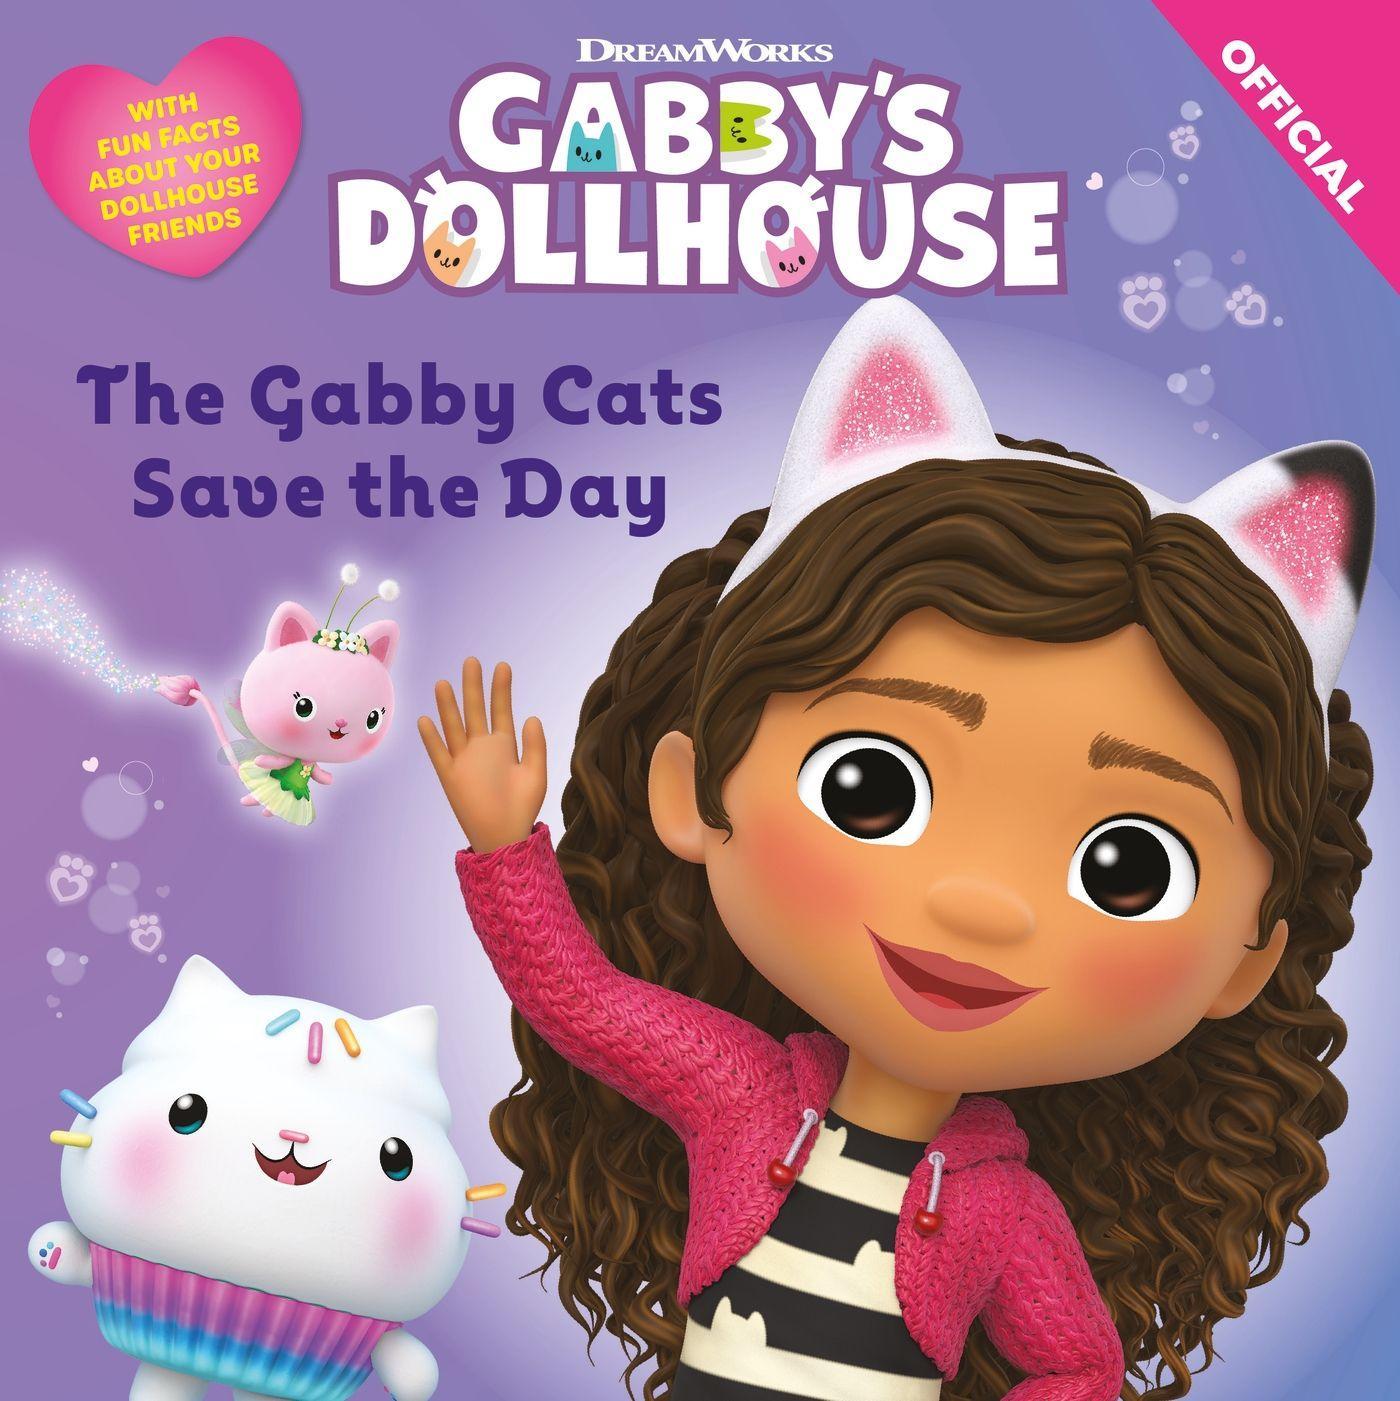 Carte DreamWorks Gabby's Dollhouse: The Gabby Cats Save the Day Official Gabby's Dollhouse